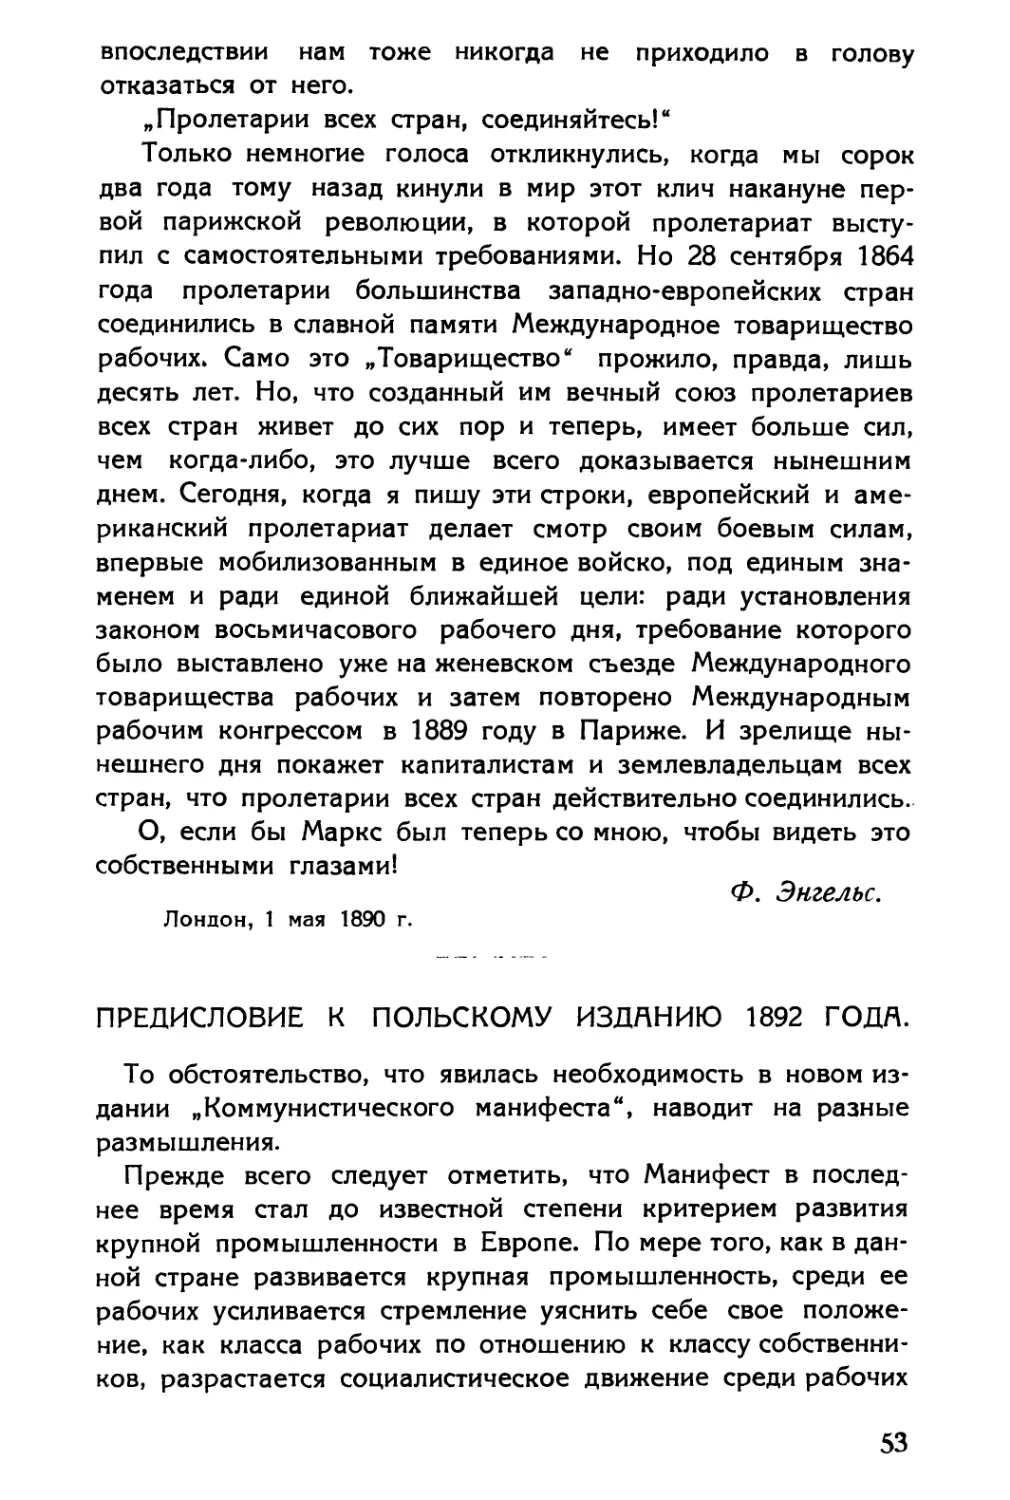 Предисловие к польскому изданию 1892 года